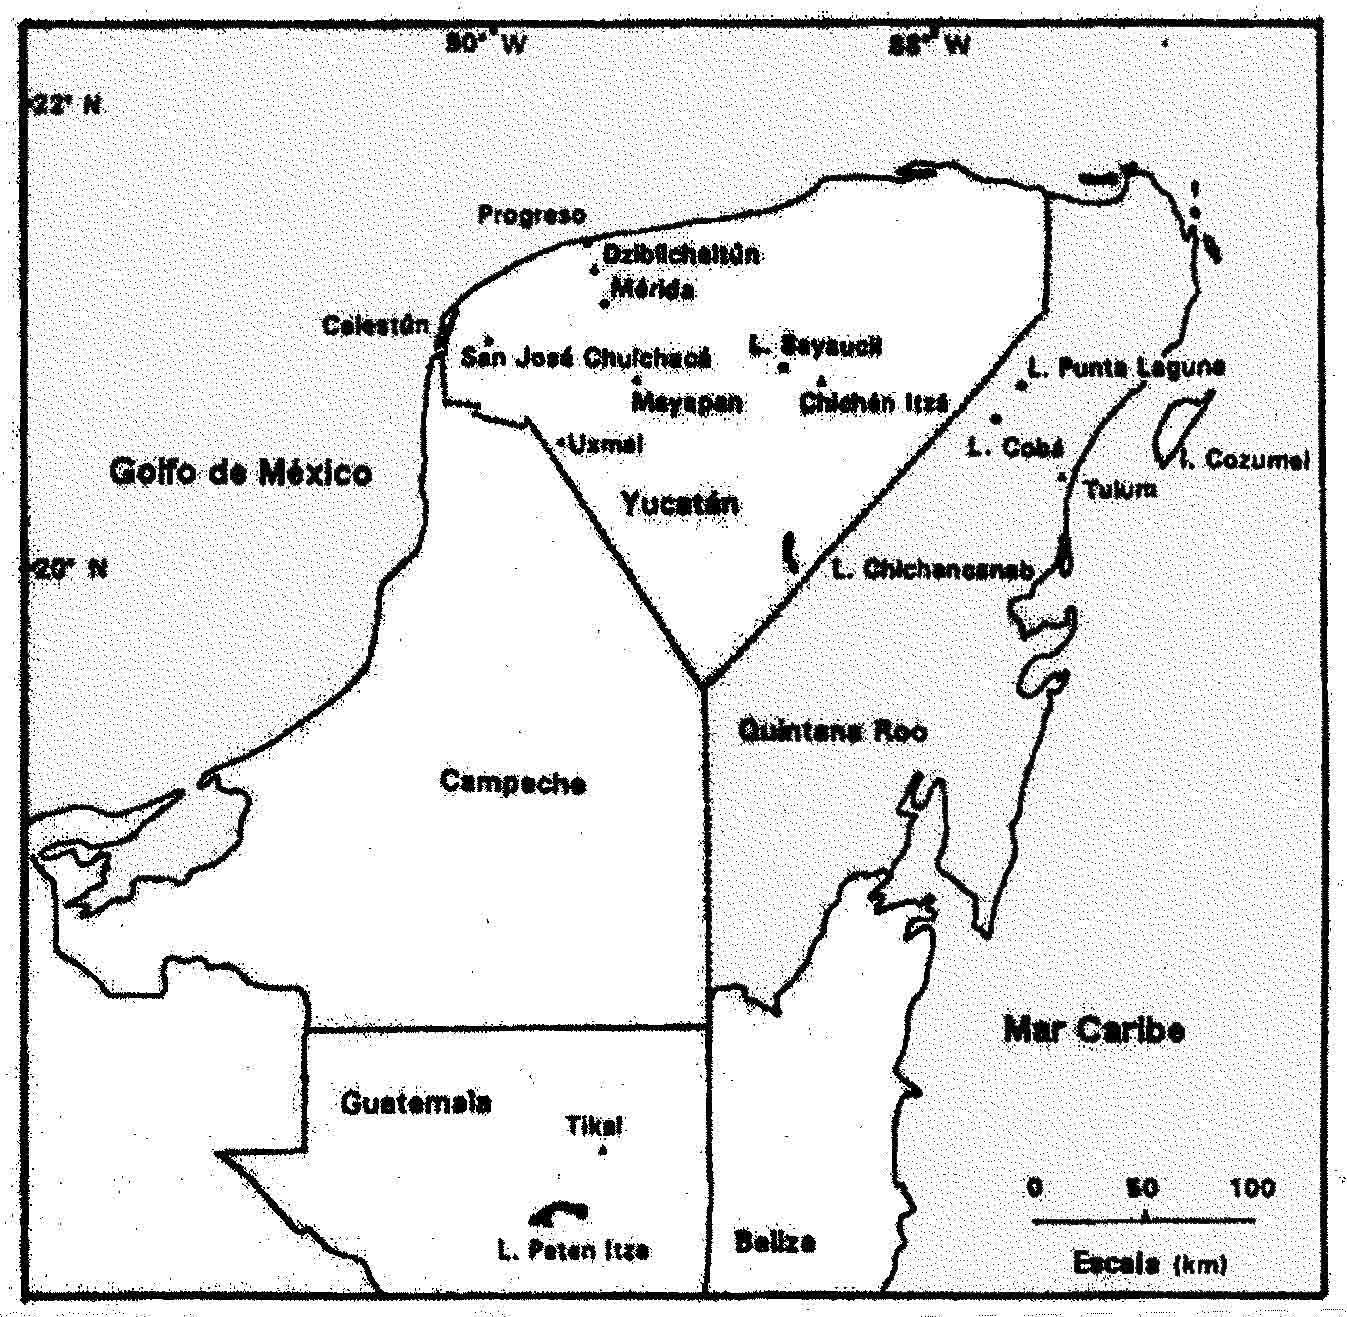 Mapa de la peninsula de Yucat�n mostrando la ubicaci�n de los lagos en donde se cuenta con informaci�n paleoclim�tica